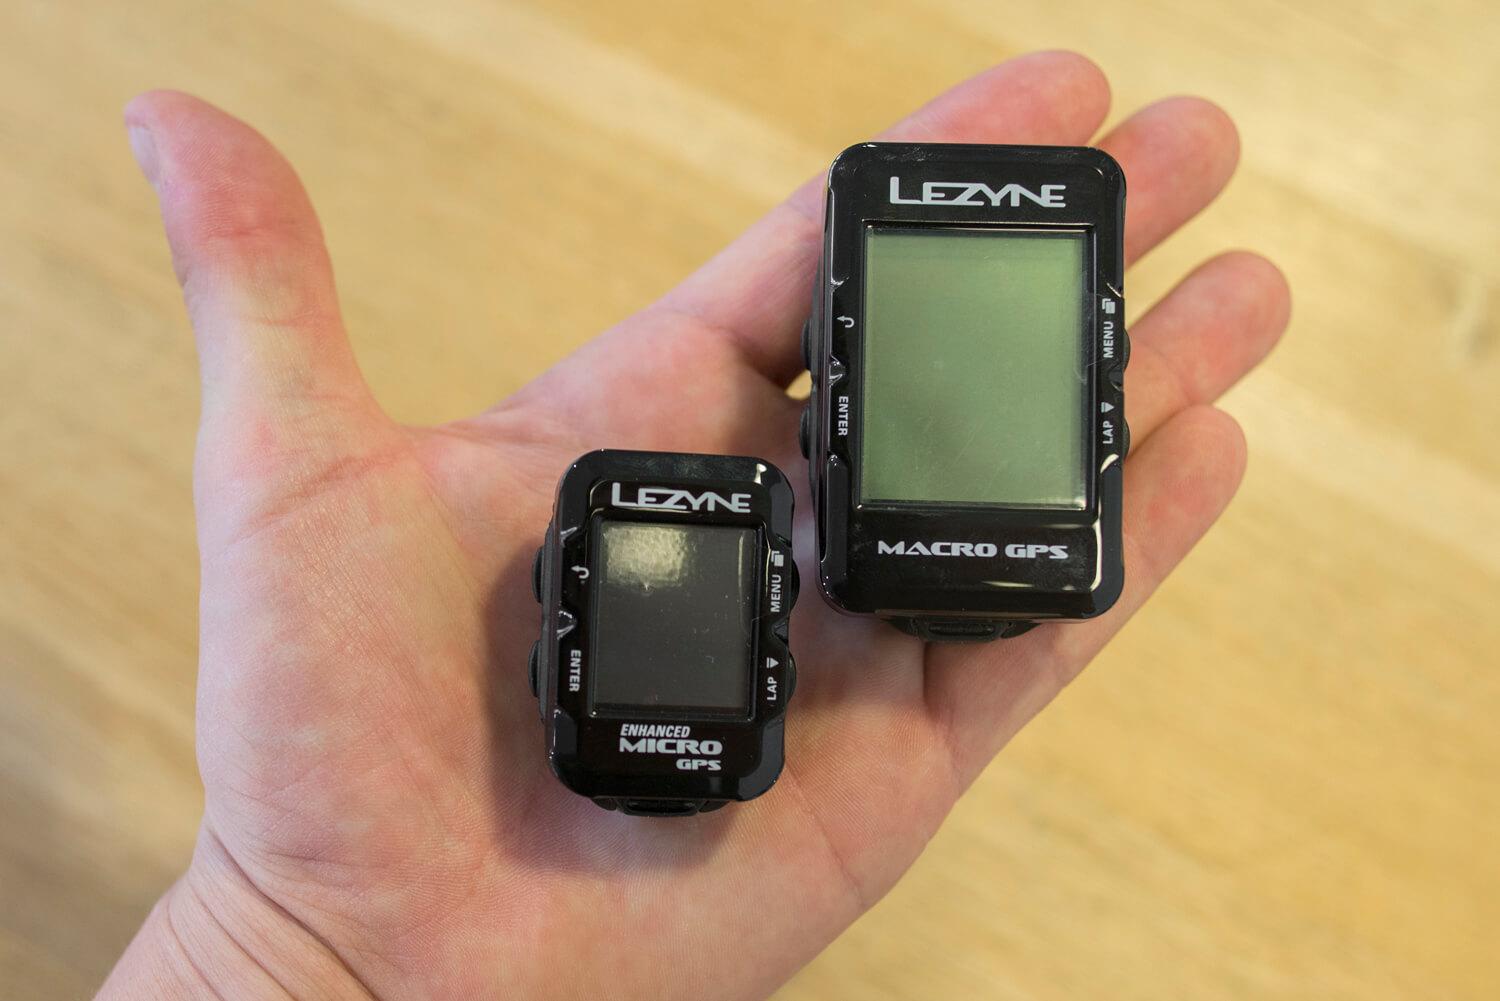 Het verschil in formaat tussen de Lezyne Micro GPS en de Lezyne Macro GPS